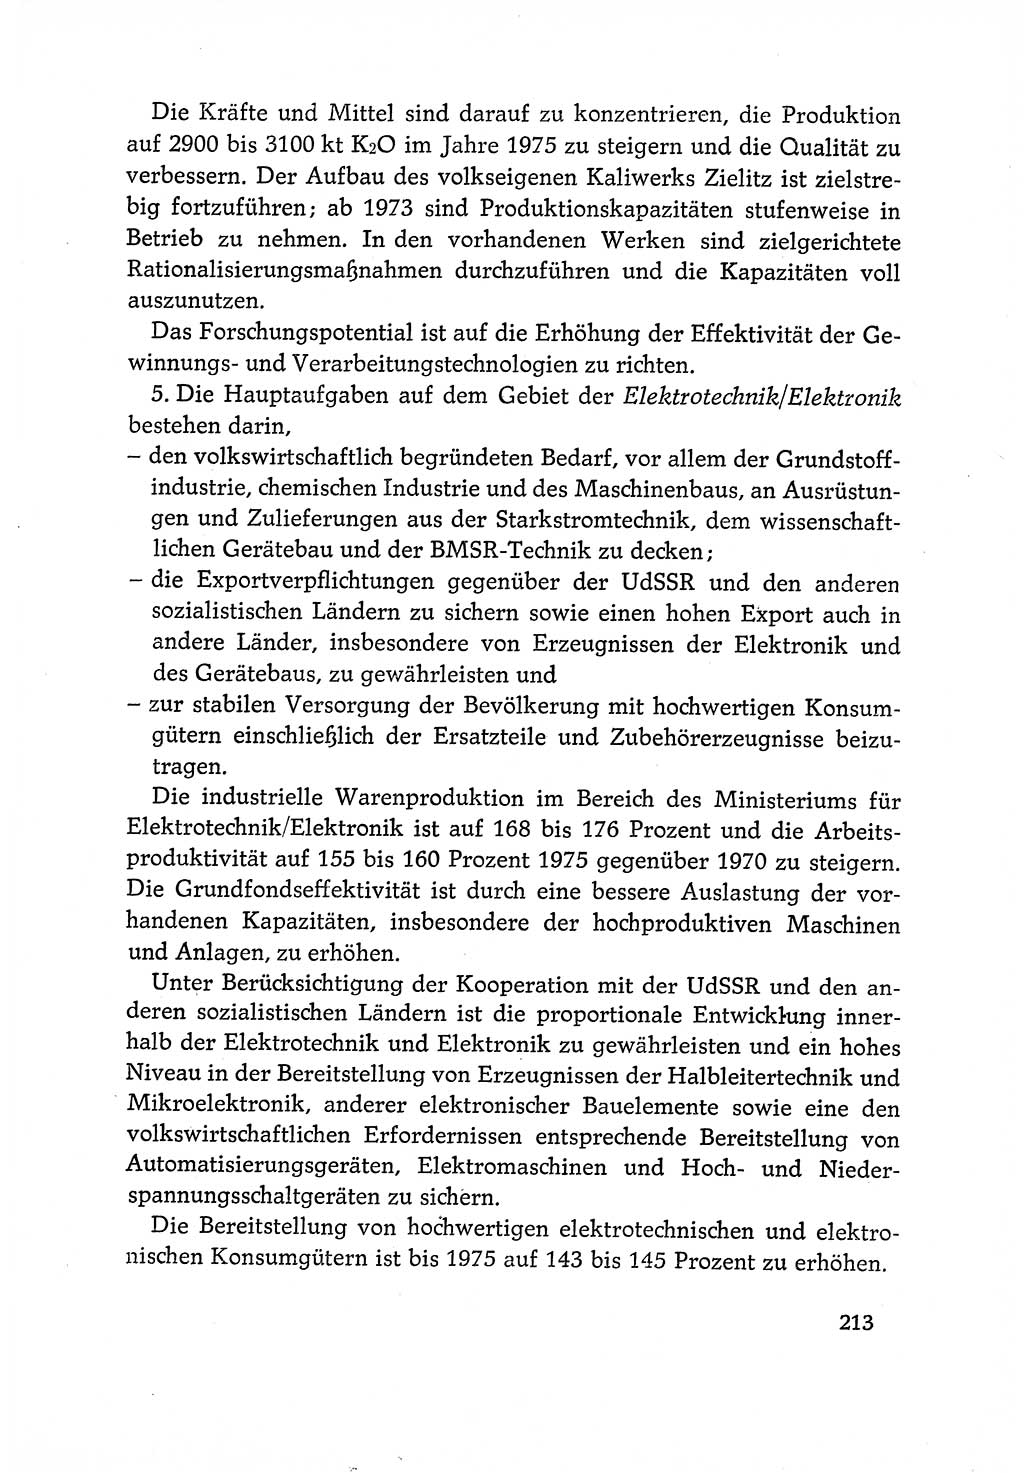 Dokumente der Sozialistischen Einheitspartei Deutschlands (SED) [Deutsche Demokratische Republik (DDR)] 1970-1971, Seite 213 (Dok. SED DDR 1970-1971, S. 213)